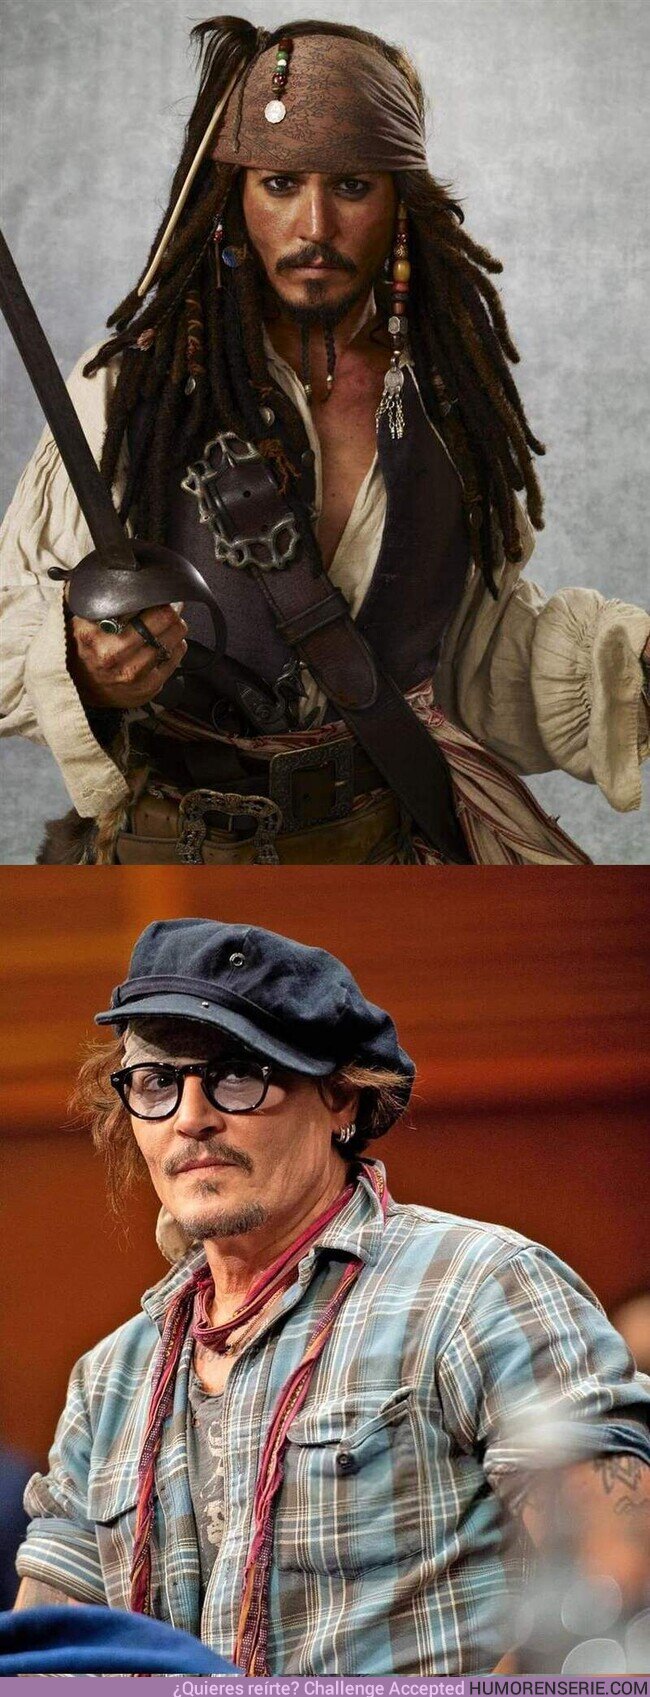 81733 - Johnny Depp habla sobre la importancia que tiene el personaje de JACK SPARROW para el:“No necesito una empresa detrás para interpretar al capitán Jack Sparrow, puedo llevarlo conmigo a donde quiera y nadie me lo puede quitar”.